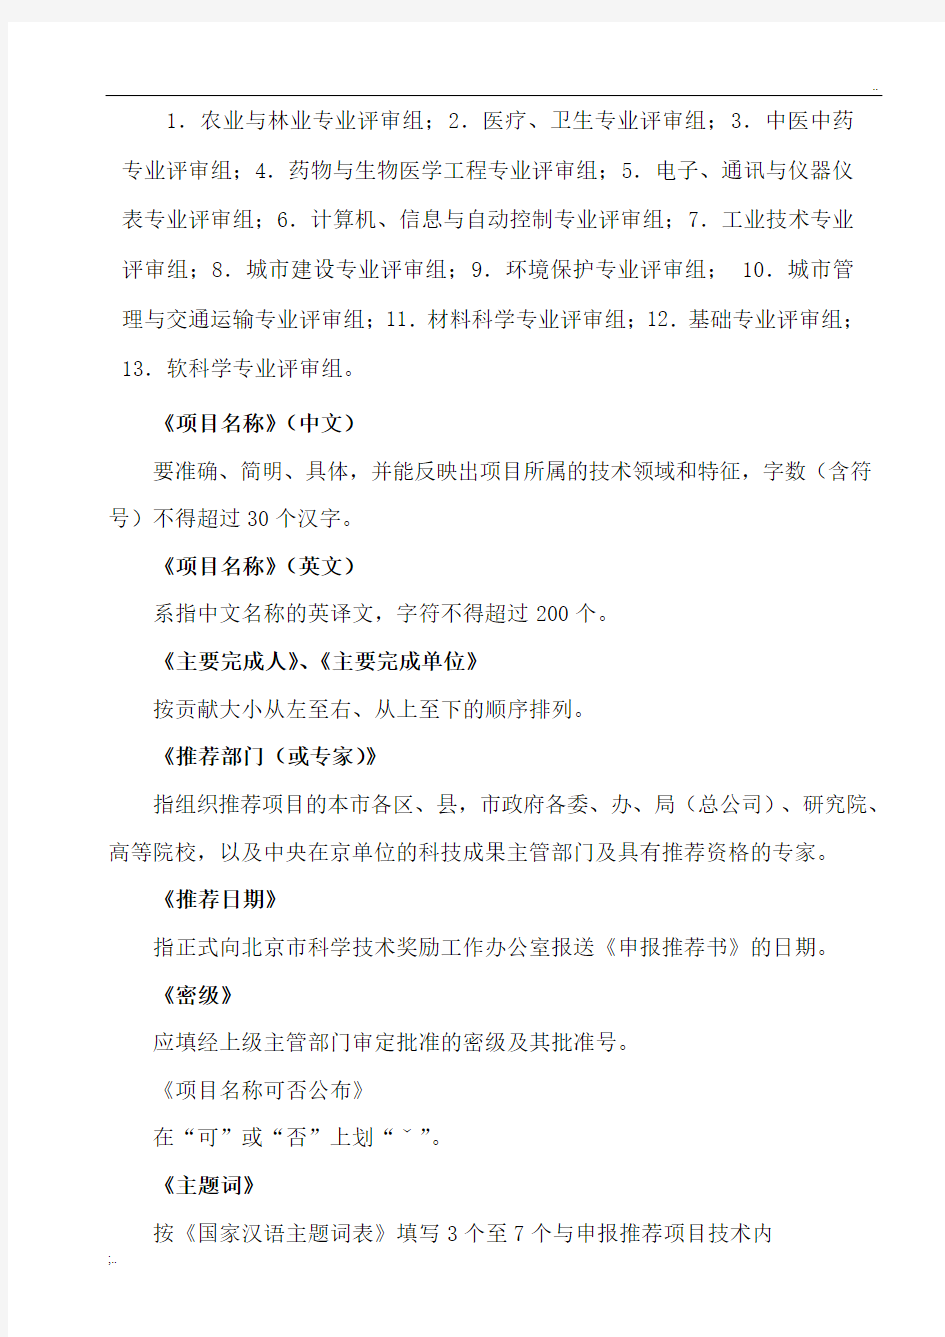 《北京市科学技术进步奖励申报推荐书》填写说明及要求